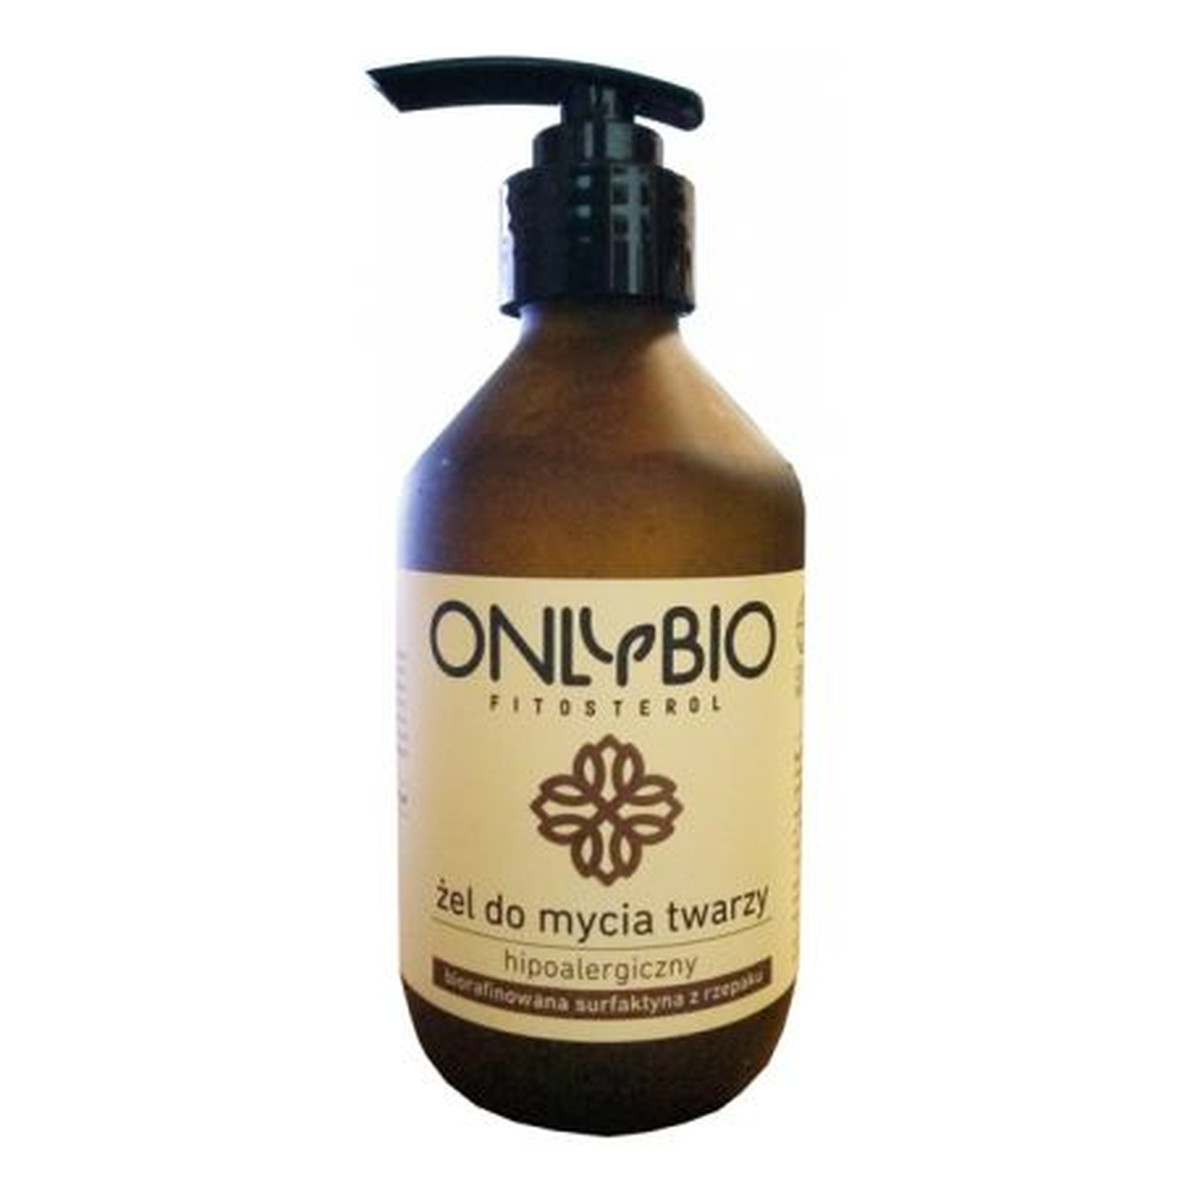 OnlyBio Fitosterol hipoalergiczny żel do mycia twarzy z olejem z rzepaku 250ml